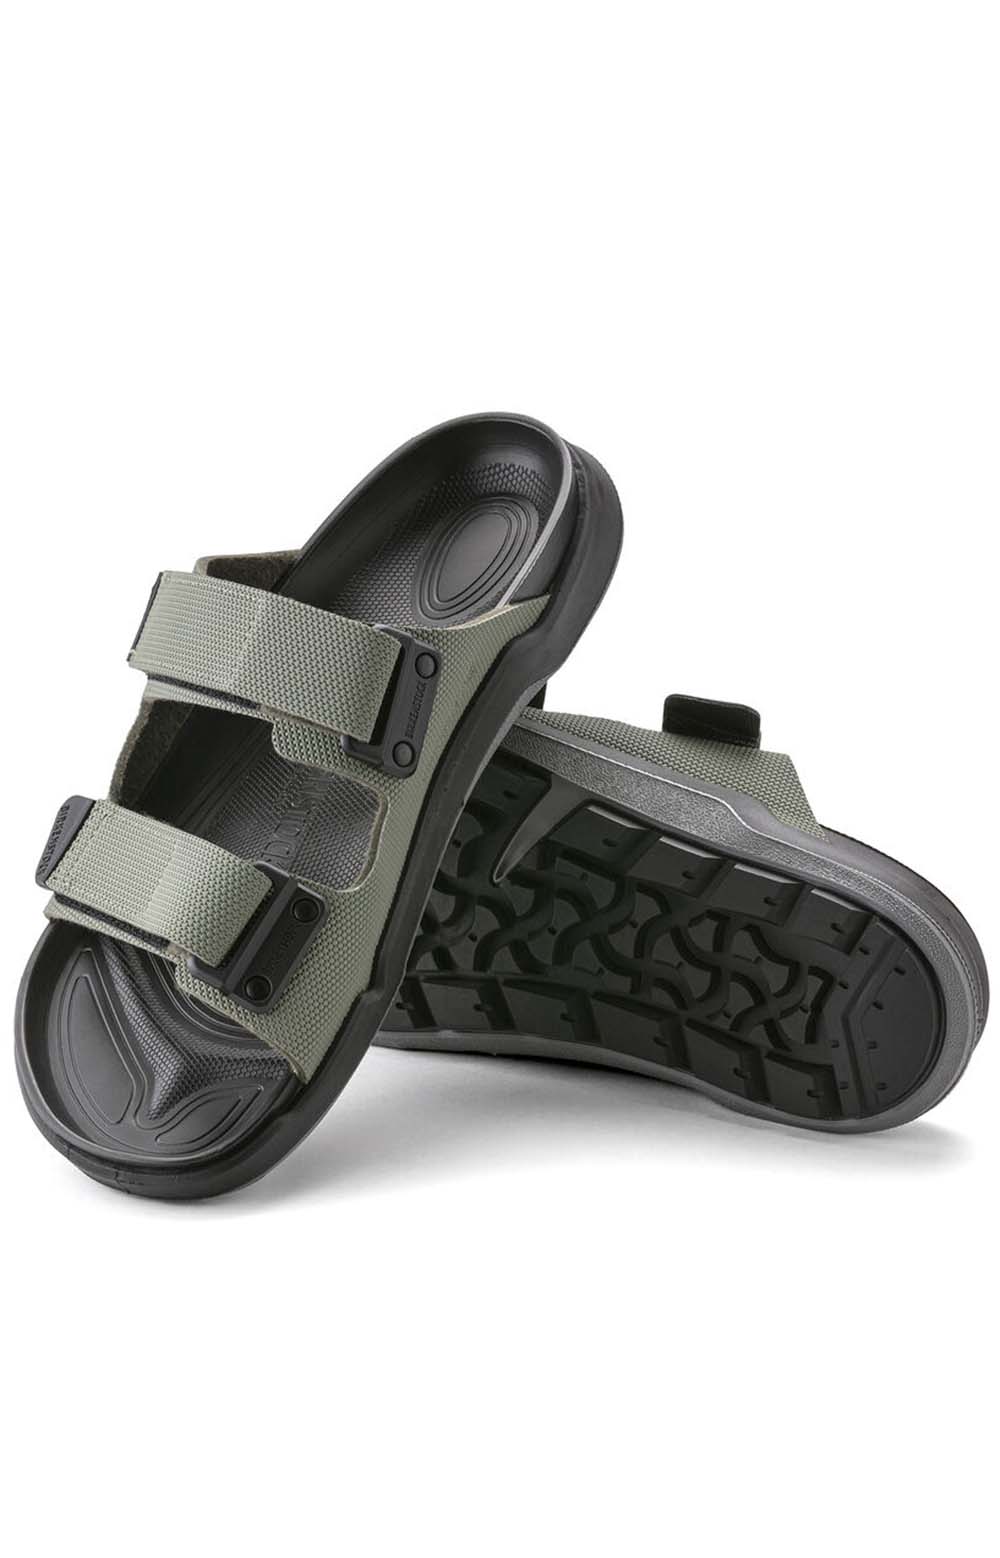 (1022616) Atacama Sandals - Futura Khaki